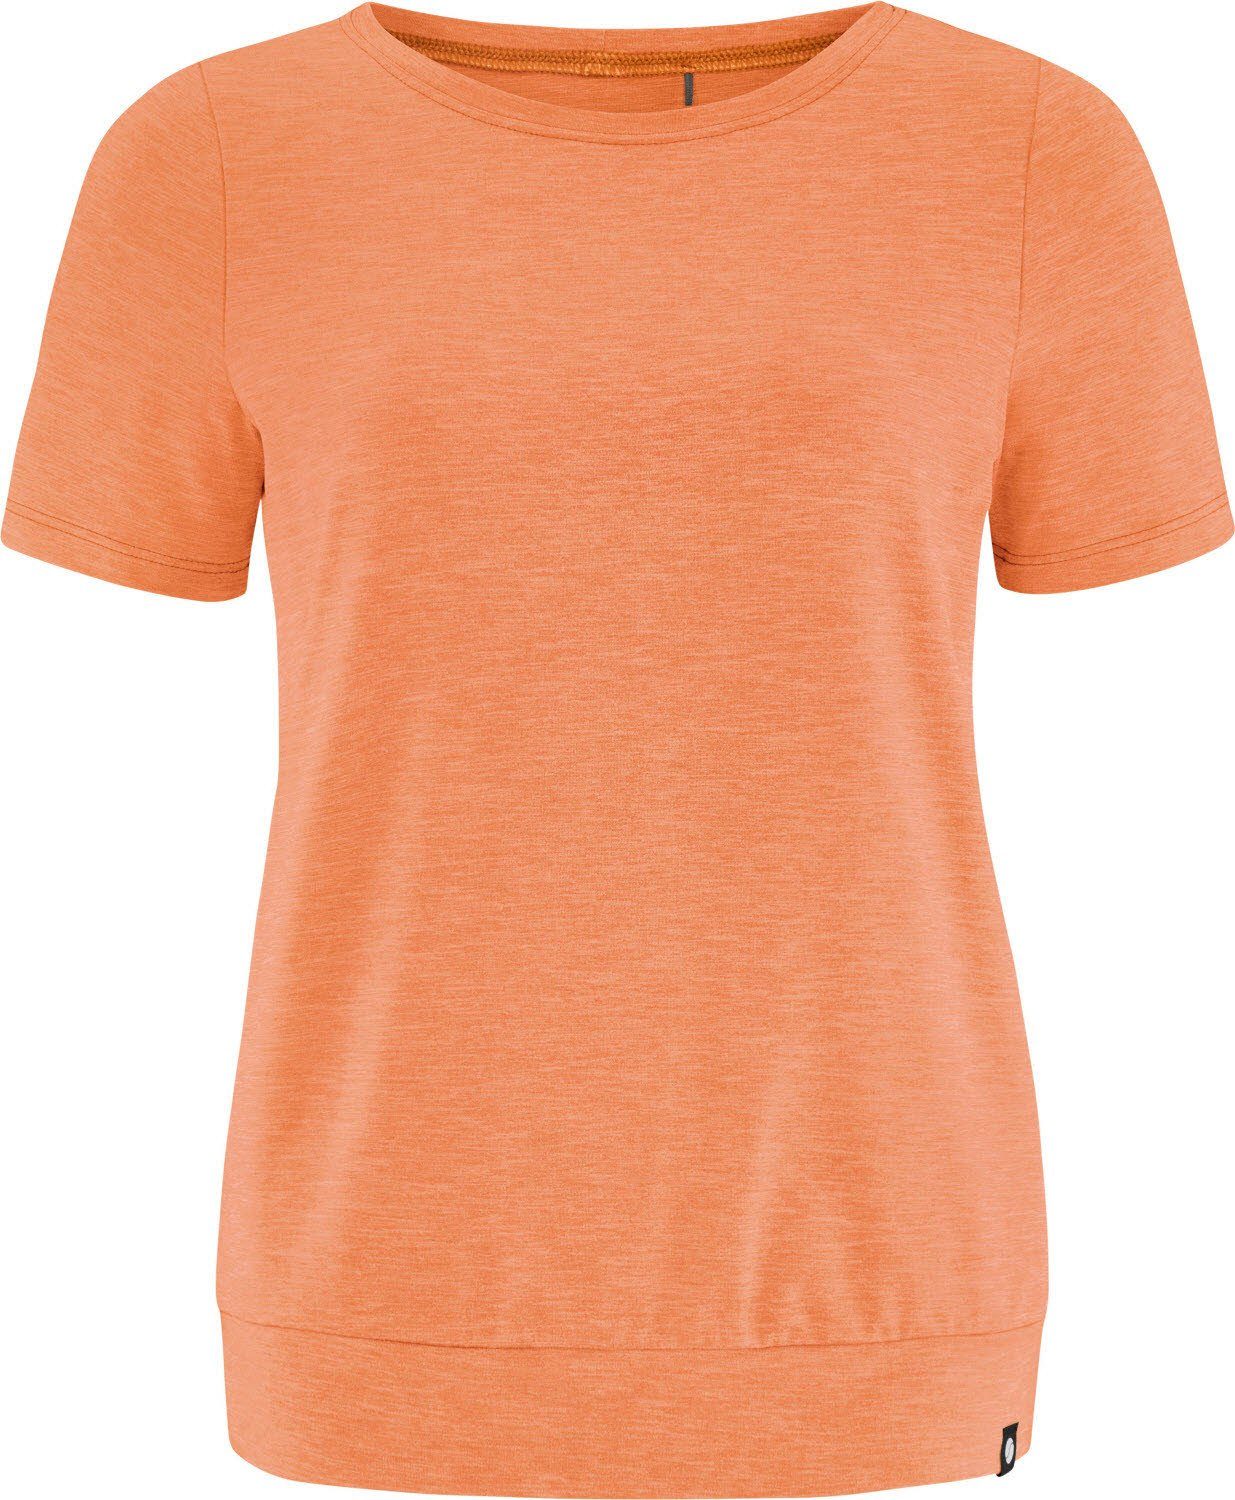 SUNDIAL-MELIERT SCHNEIDER Sportswear Pennyw-Shirt Trainingsshirt